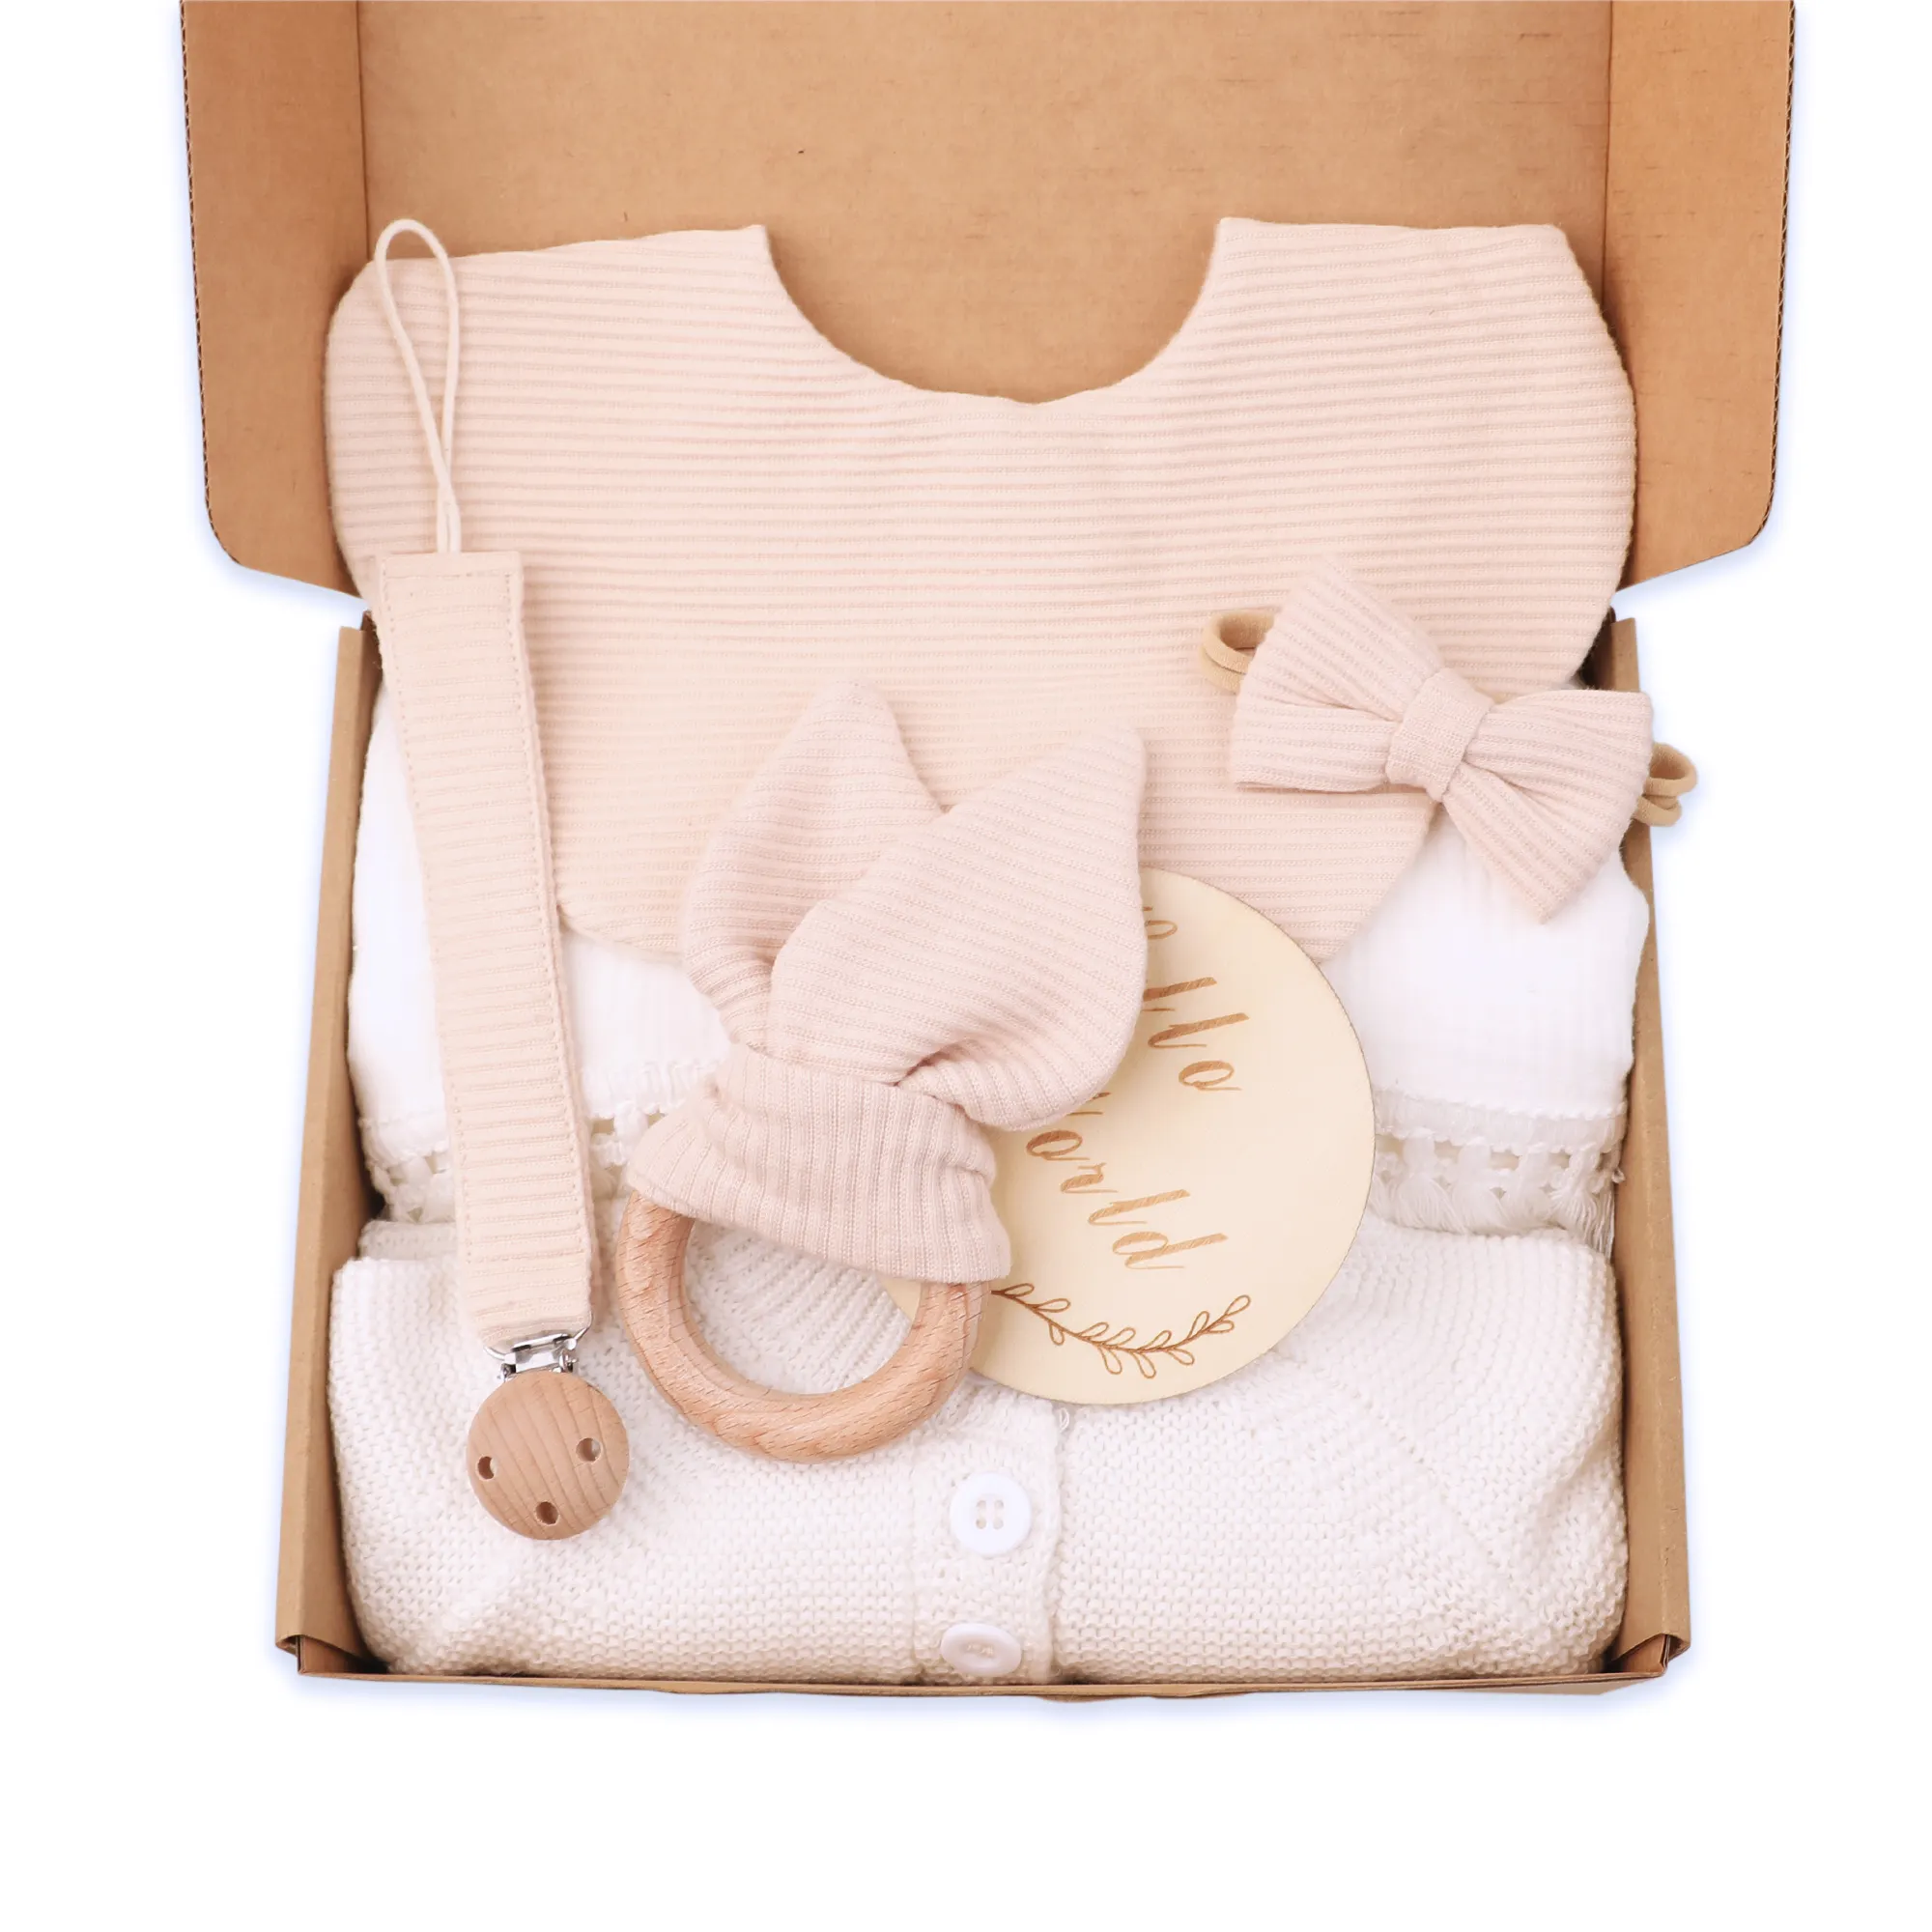 2024 yenidoğan hediye seti bebek püsküller battaniye emzik zinciri tığ bebek tulum flora önlükler tavşan diş kaşıyıcı doğum hediye kutusu